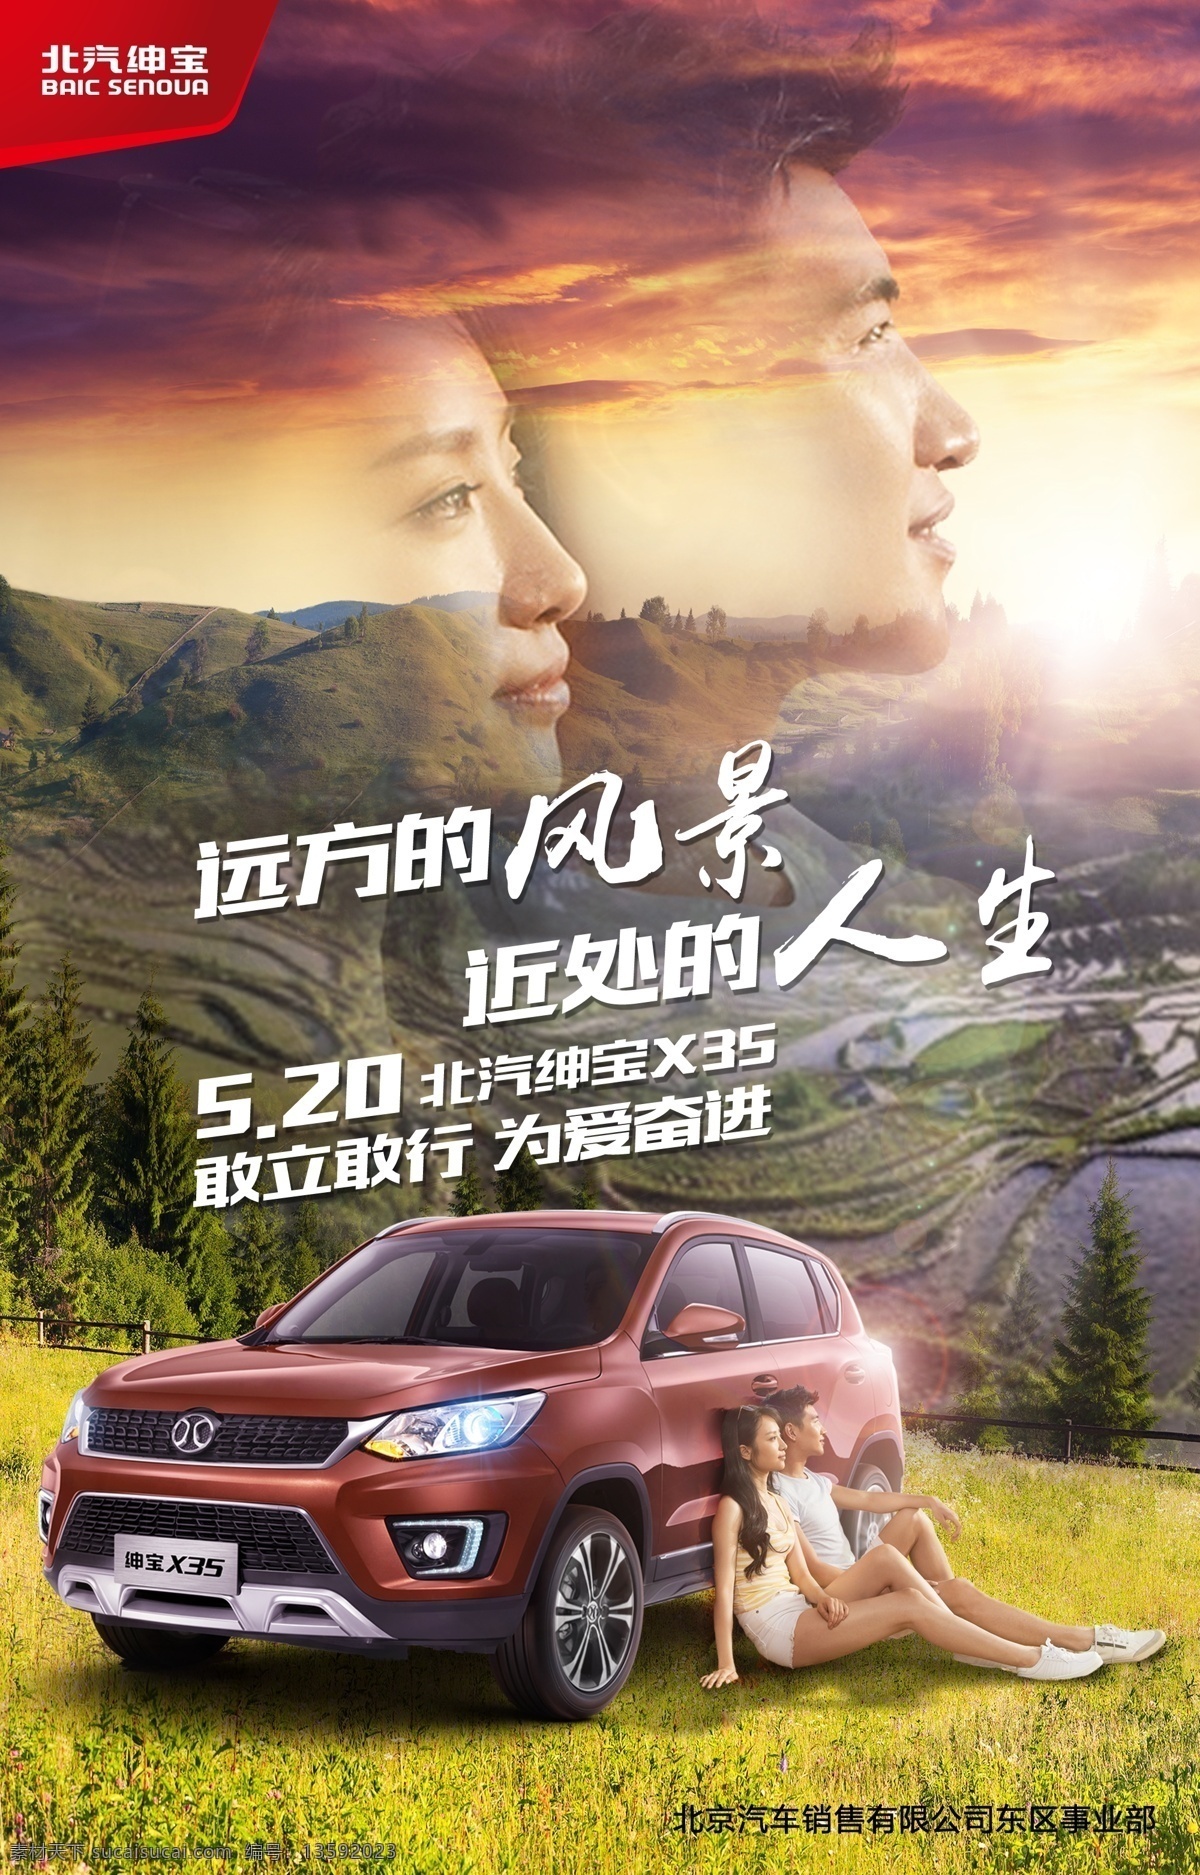 520 汽车 热点 海报 情人节 广告 平面设计 汽车广告 远方的风景 近处的人生 汽车海报 北京汽车 敢立敢行 爱情 主kv